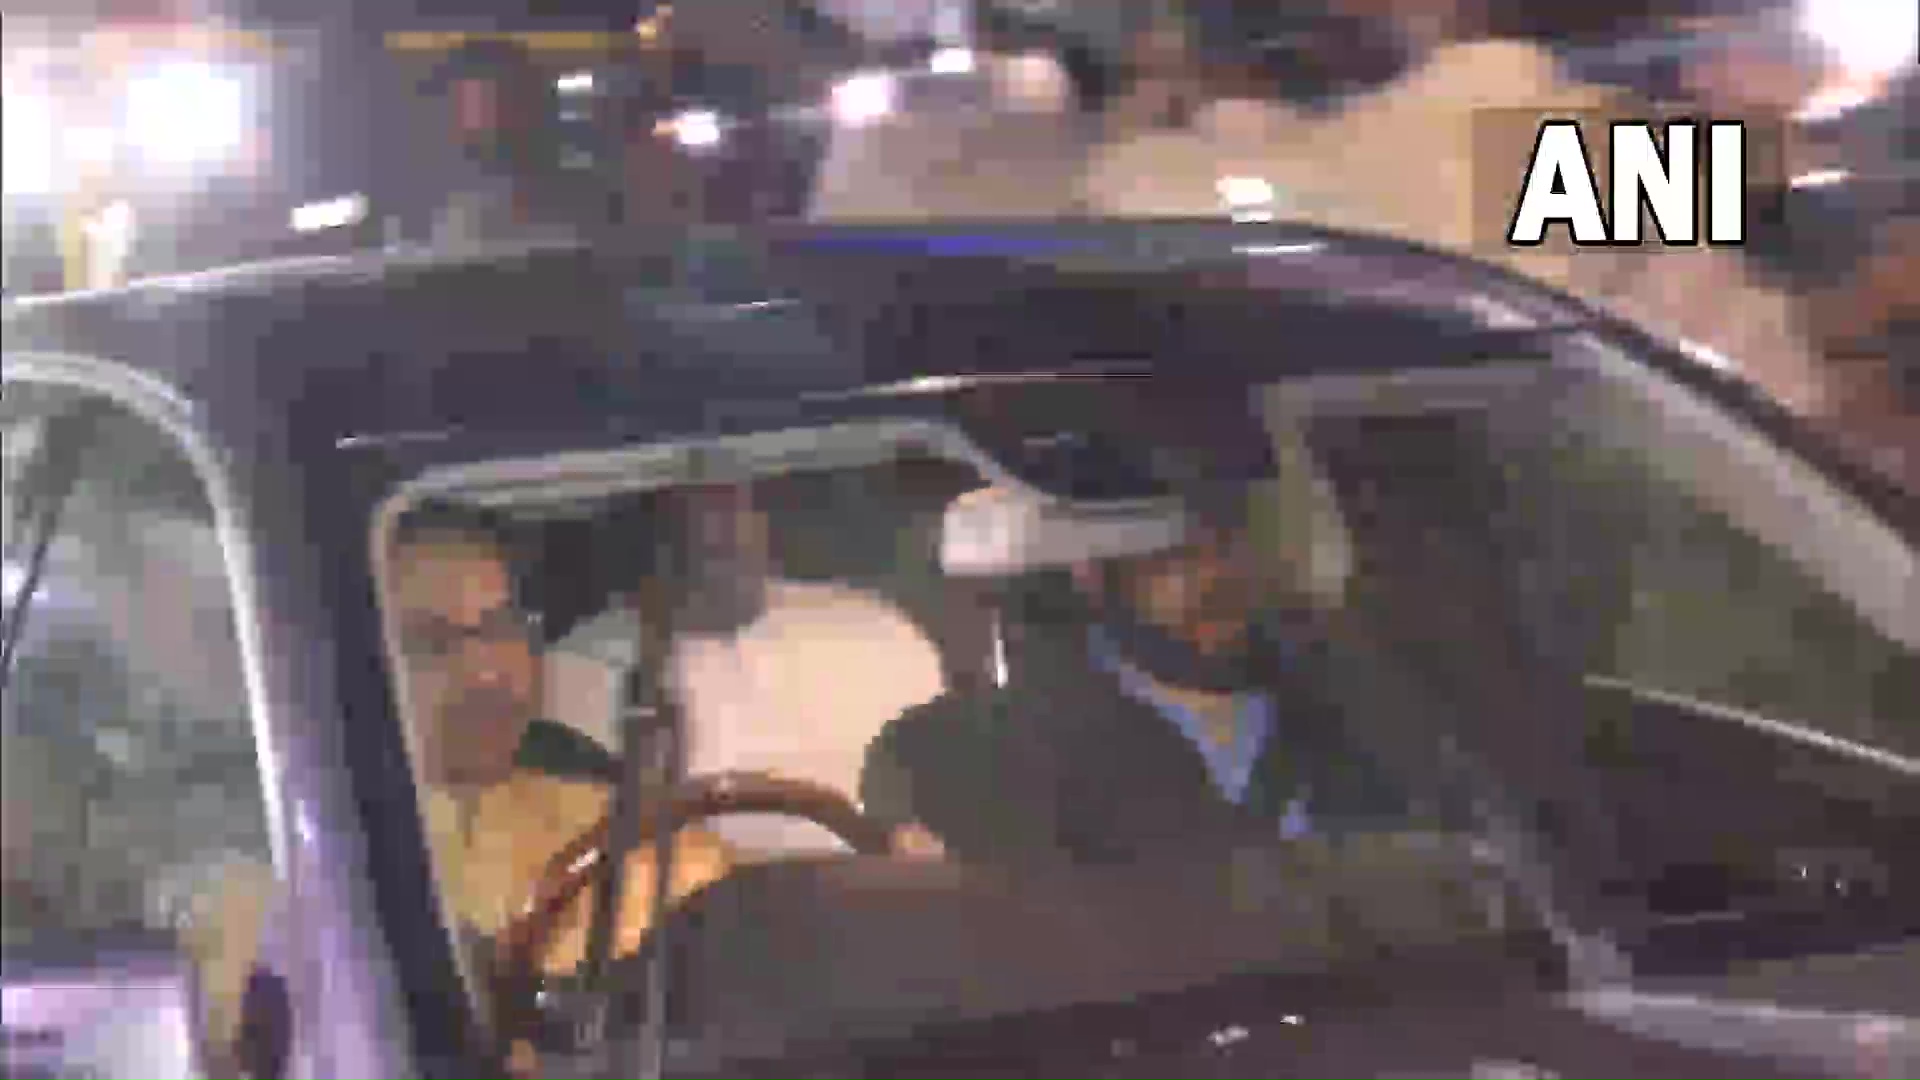 VIDEO देखिये : मुख्यमंत्री खुद कार चलाकर पहुंचे इस्तीफा देने....मंत्री बेटे को कार में सामने की सीट पर बैठाया....1 जुलाई को नये CM लेंगे शपथ